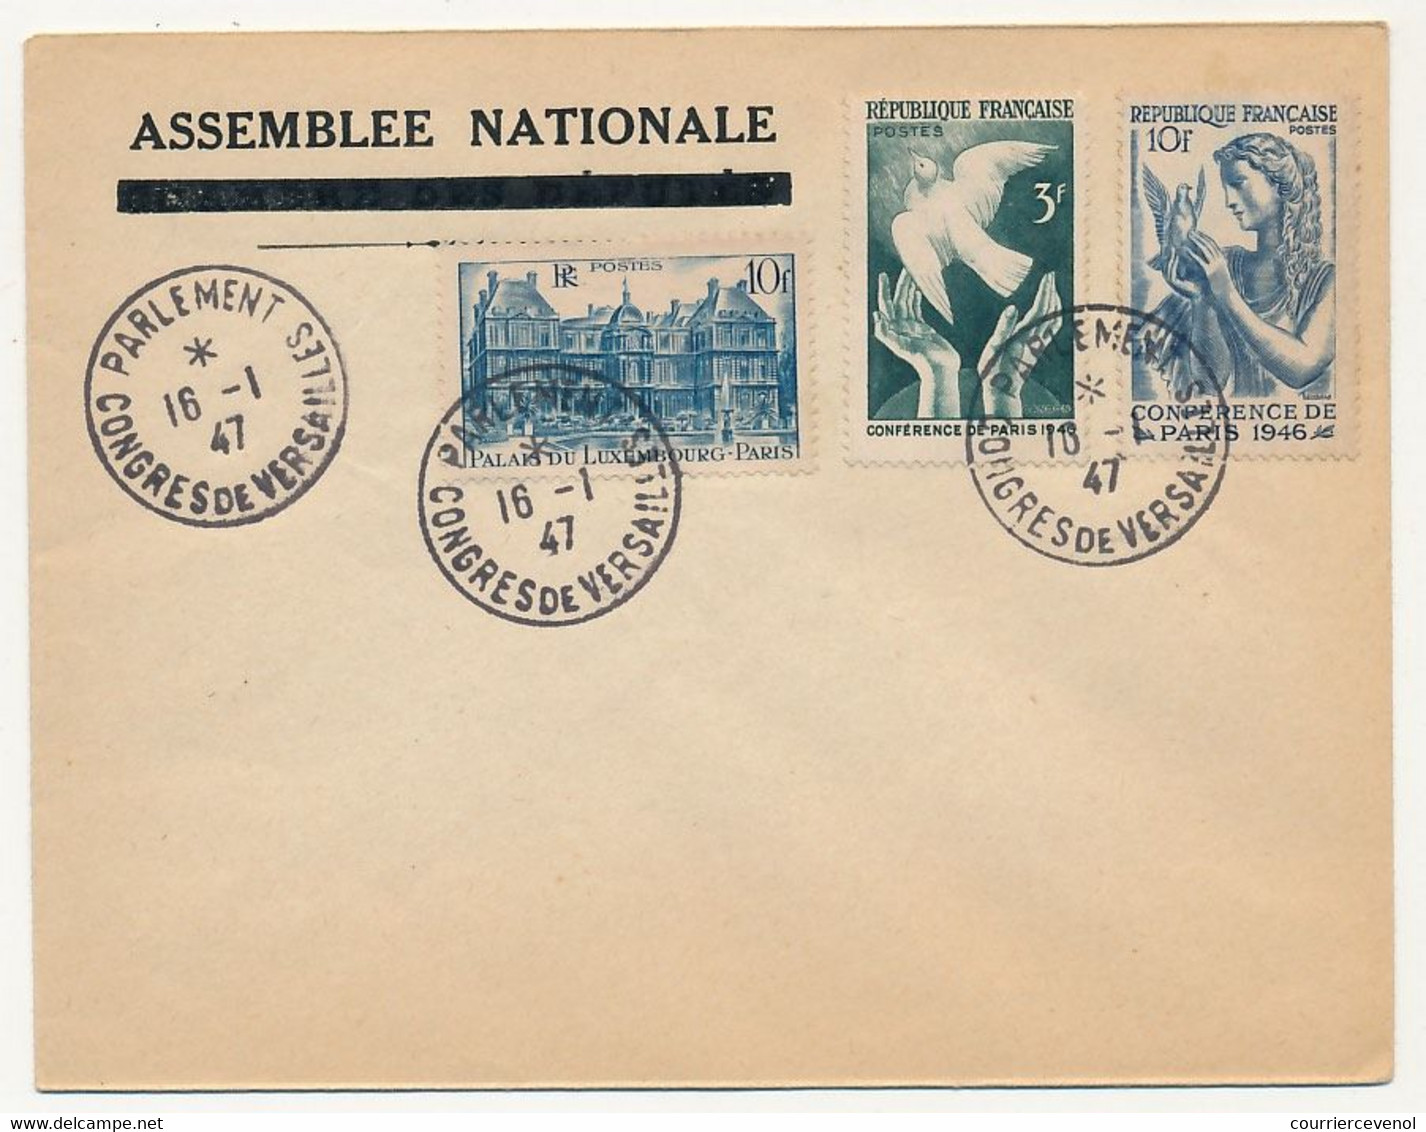 FRANCE - Enveloppe En-tête Non Adressée, Affr Composé, Cachet "Parlement Congrès De Versailles 16/1/1947" - Matasellos Conmemorativos